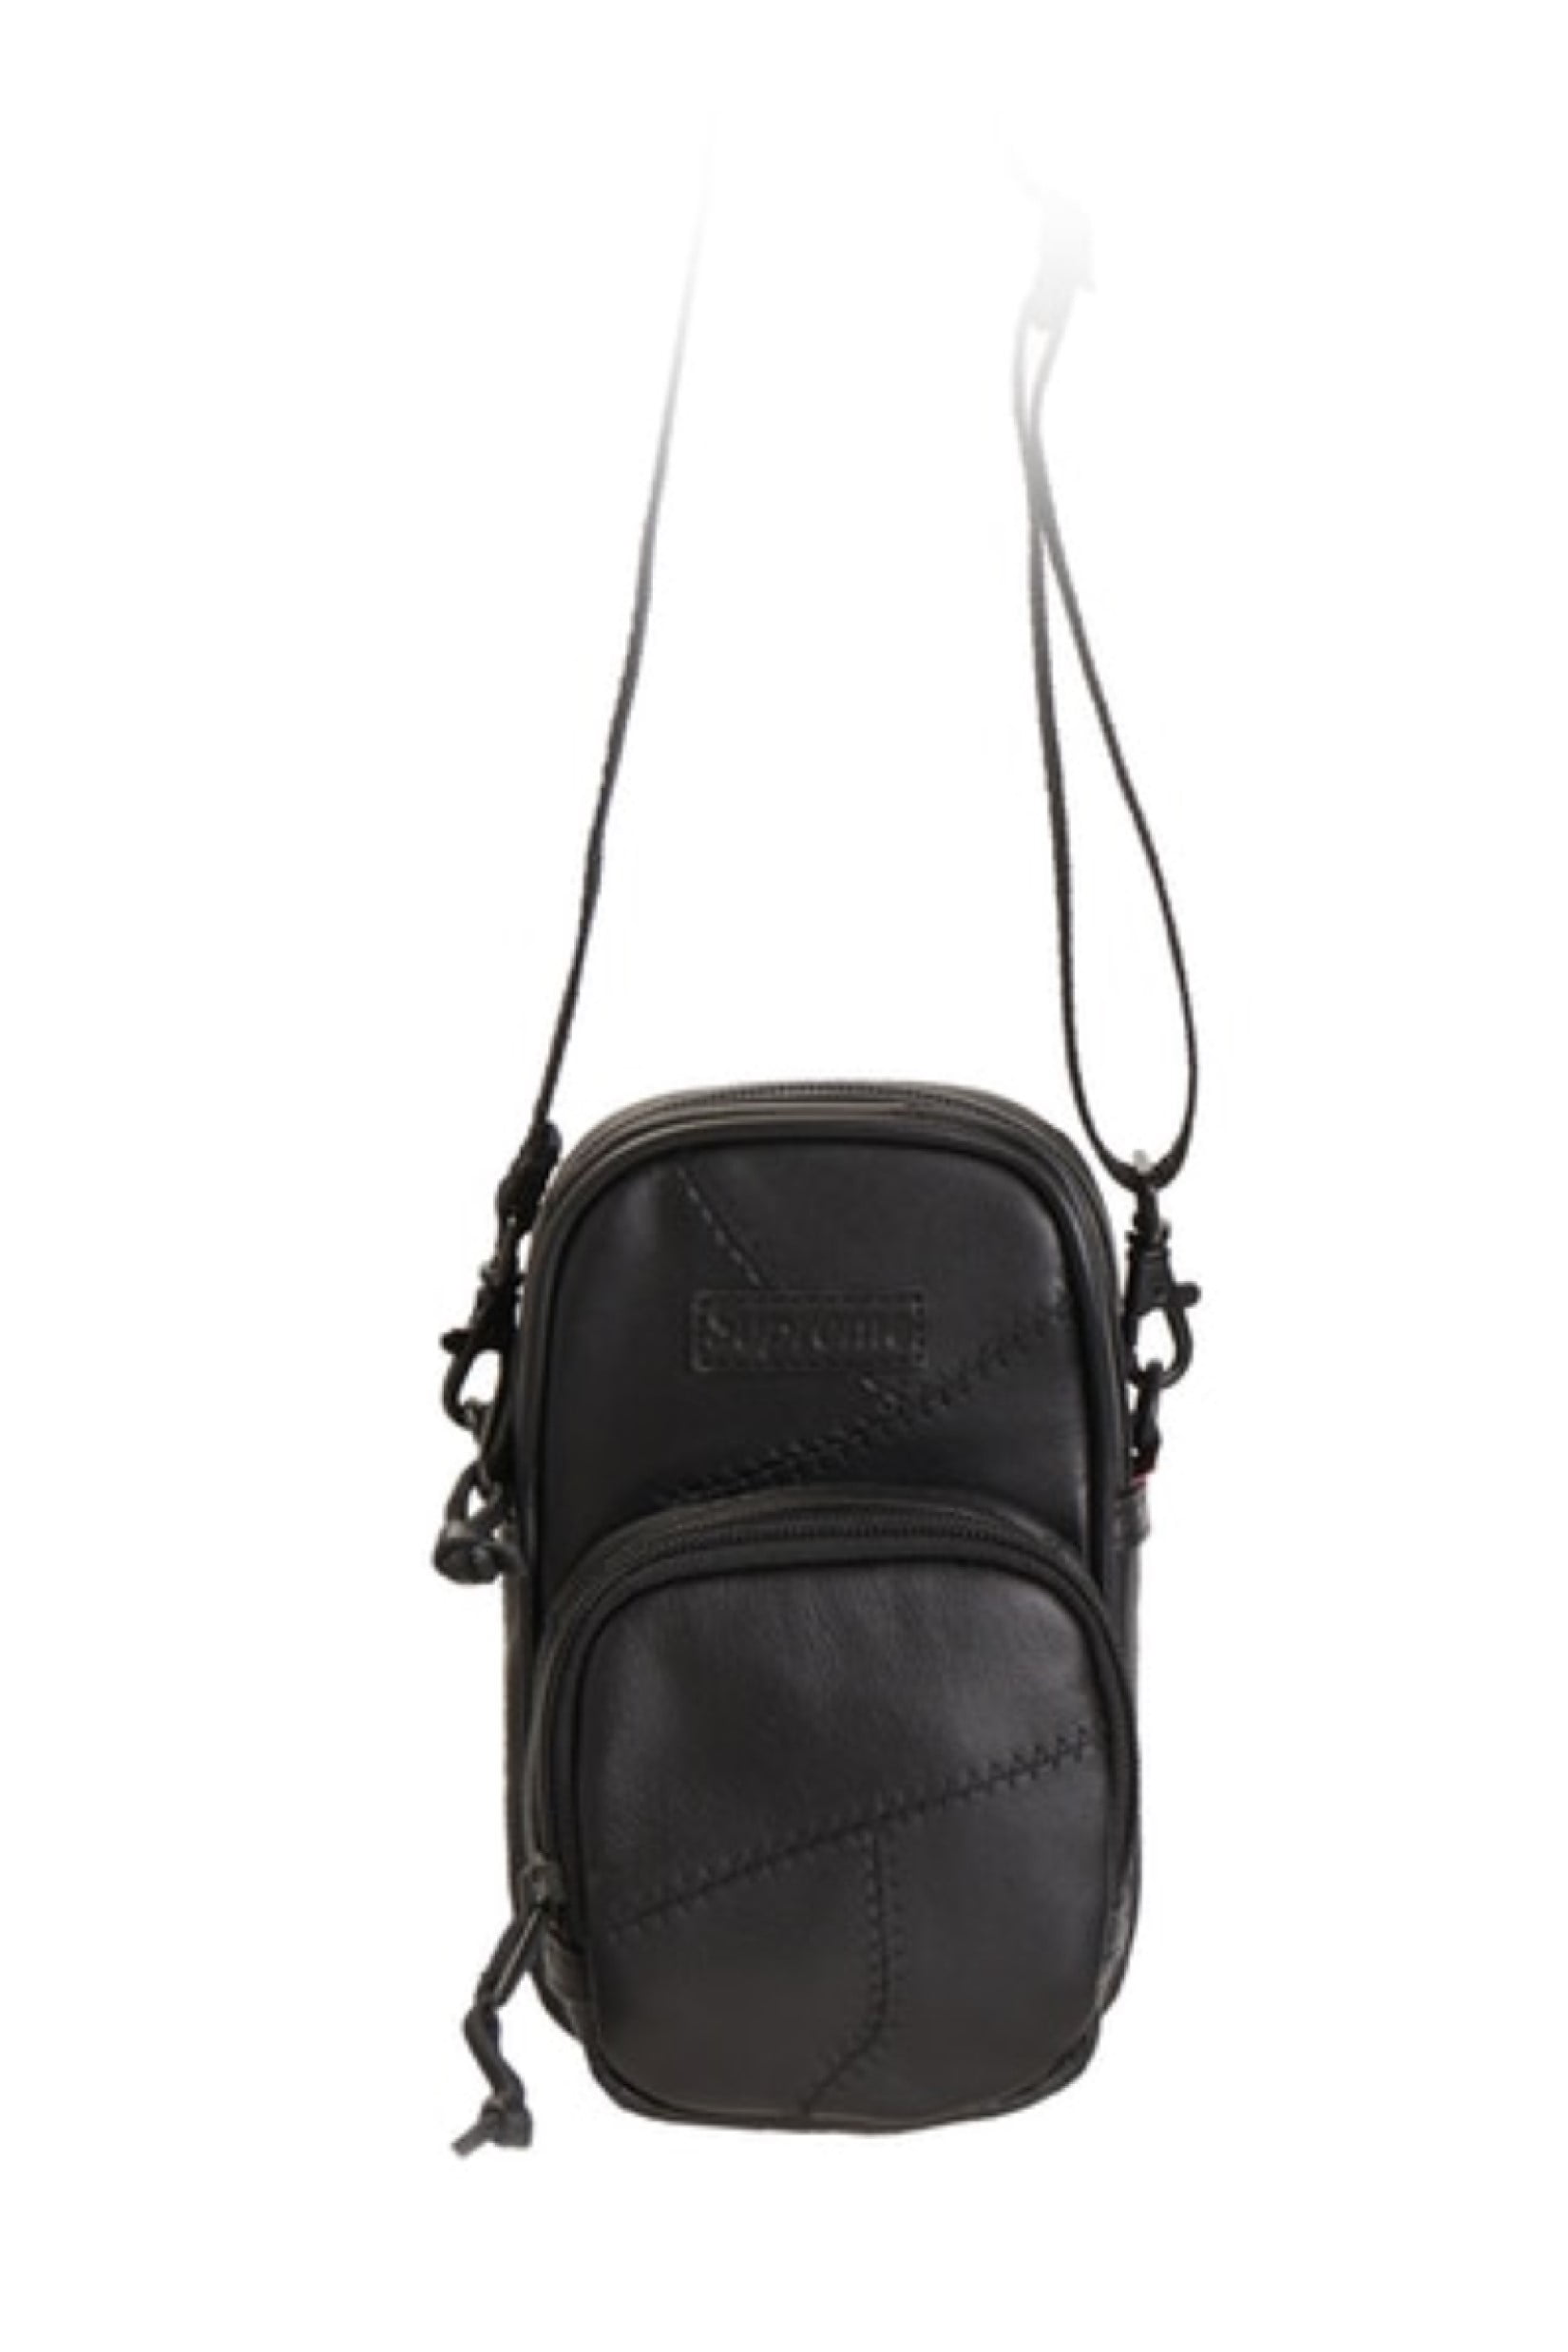 Supreme - Supreme Patchwork Leather Small Shoulder Bag Black - 0 - 0